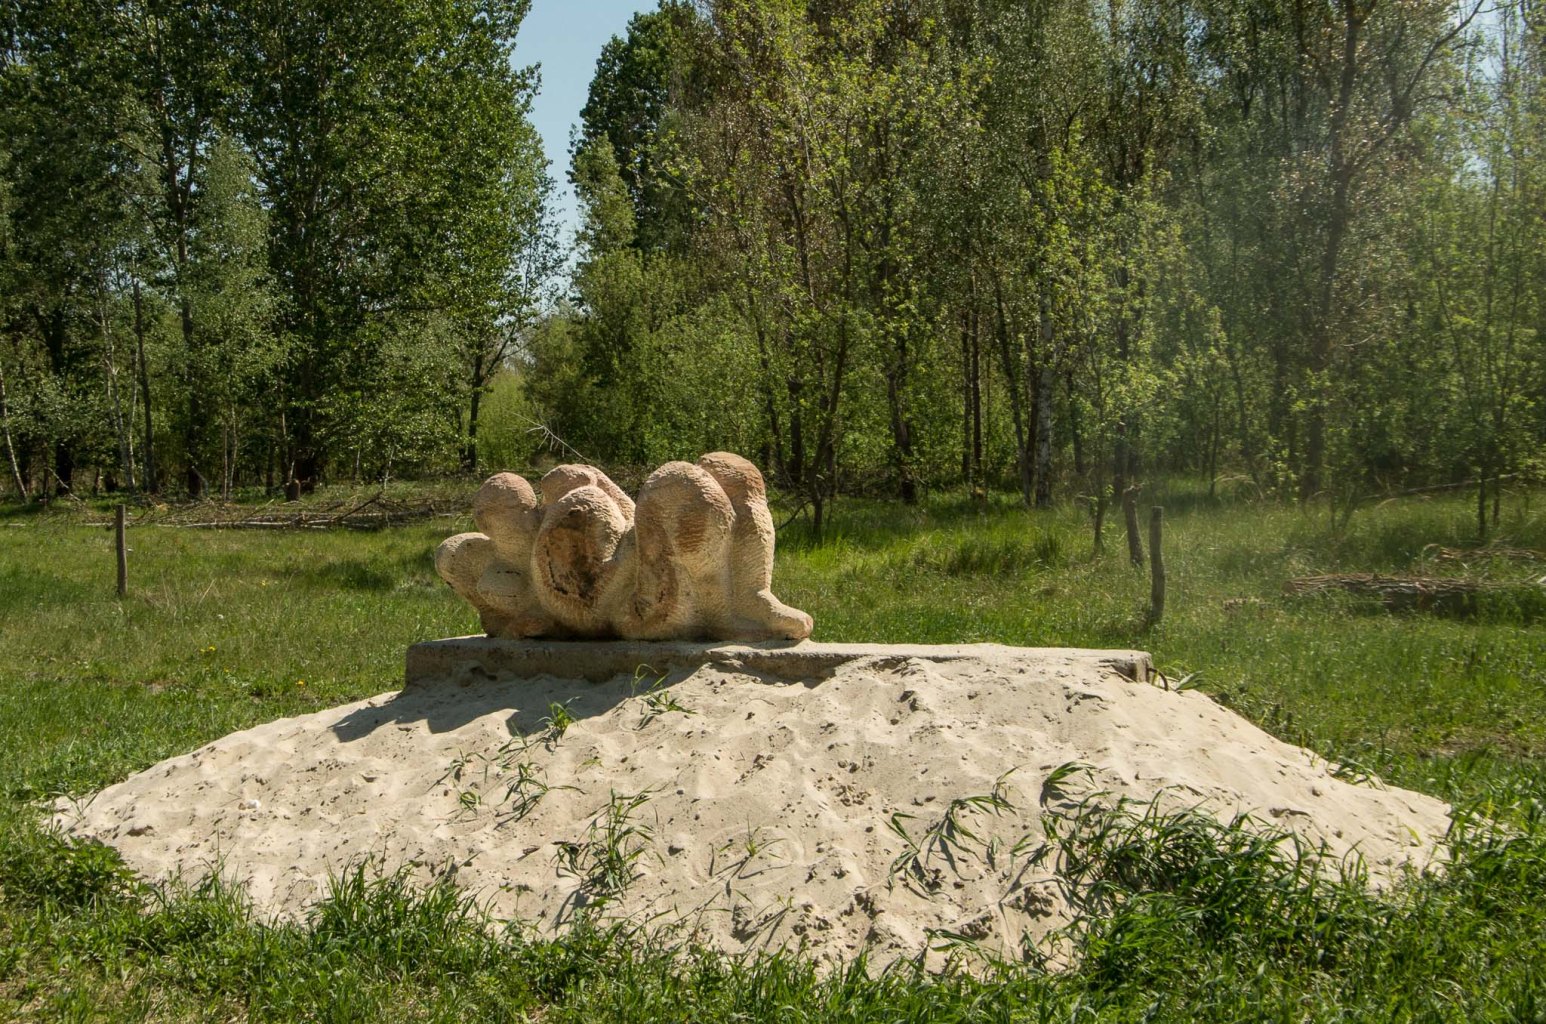 Werk aus dem Skulpturen-Symposium "Steine ohne Grenzen" nahe Hobrechtsfelde.